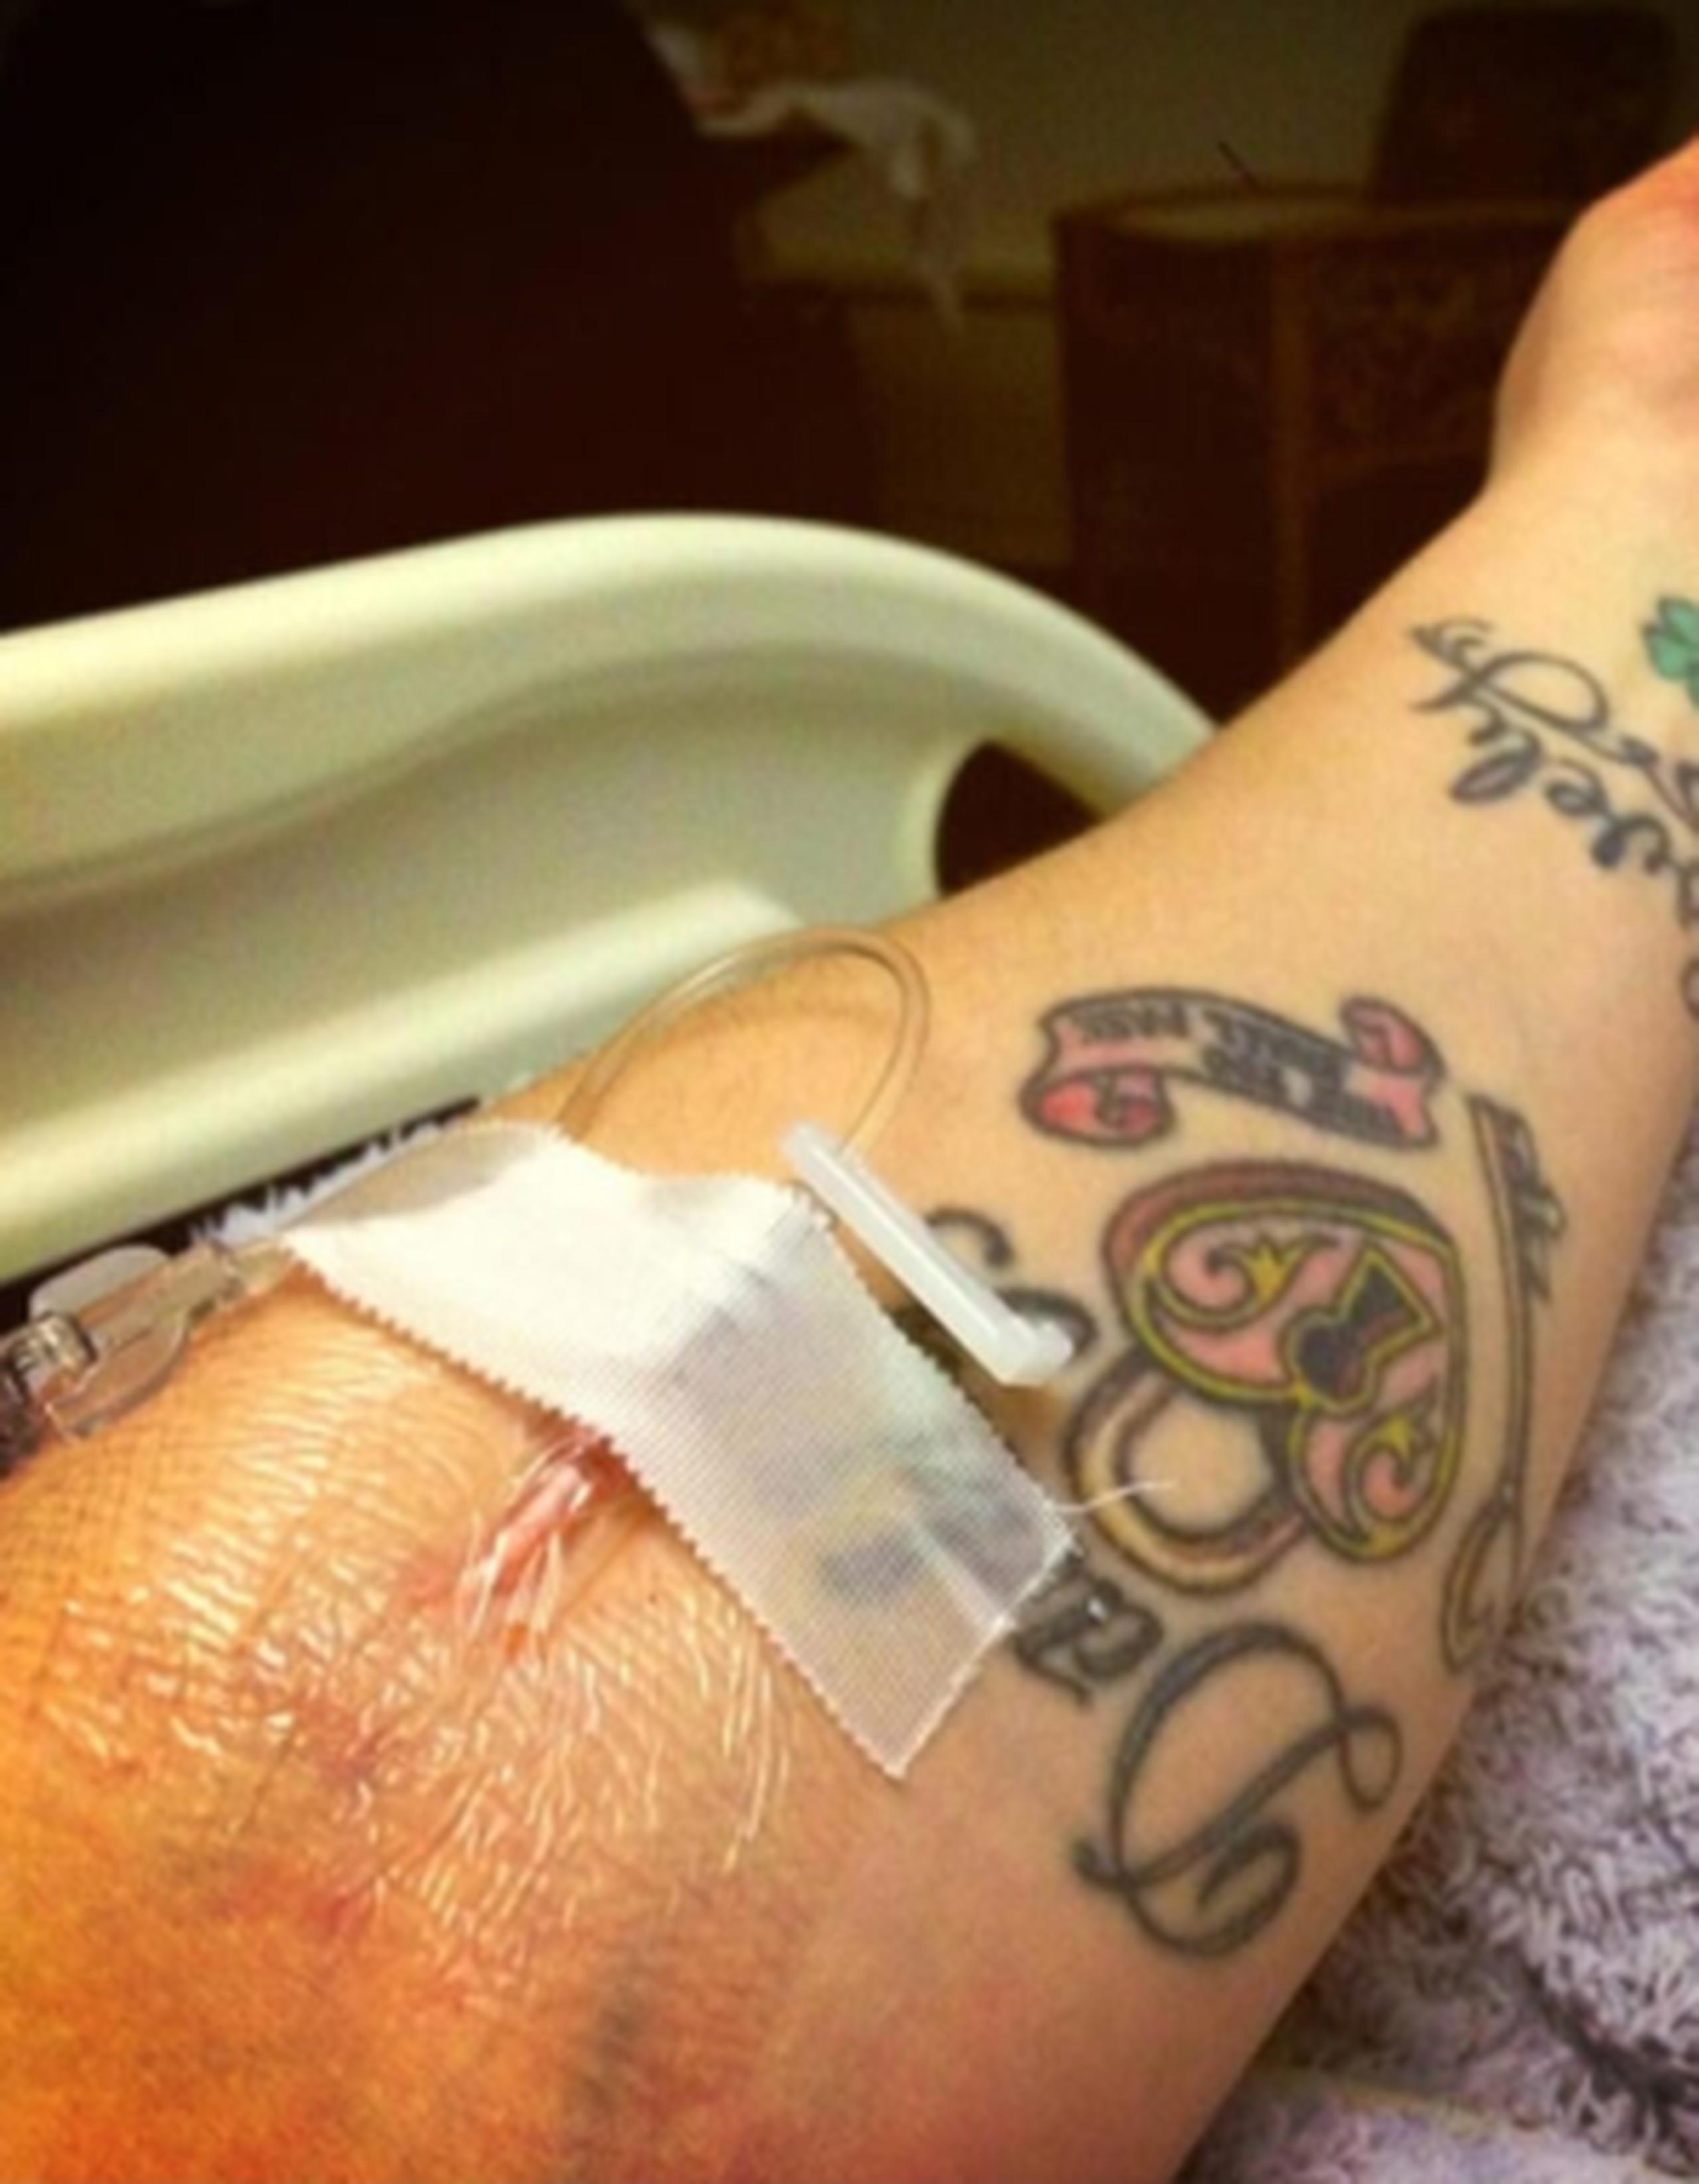 La presentadora de televisión de 28 años publicó una fotografía en Twitter la noche del jueves en la que se ve su brazo tatuado recibiendo una solución intravenosa en un hospital. (Twitter)